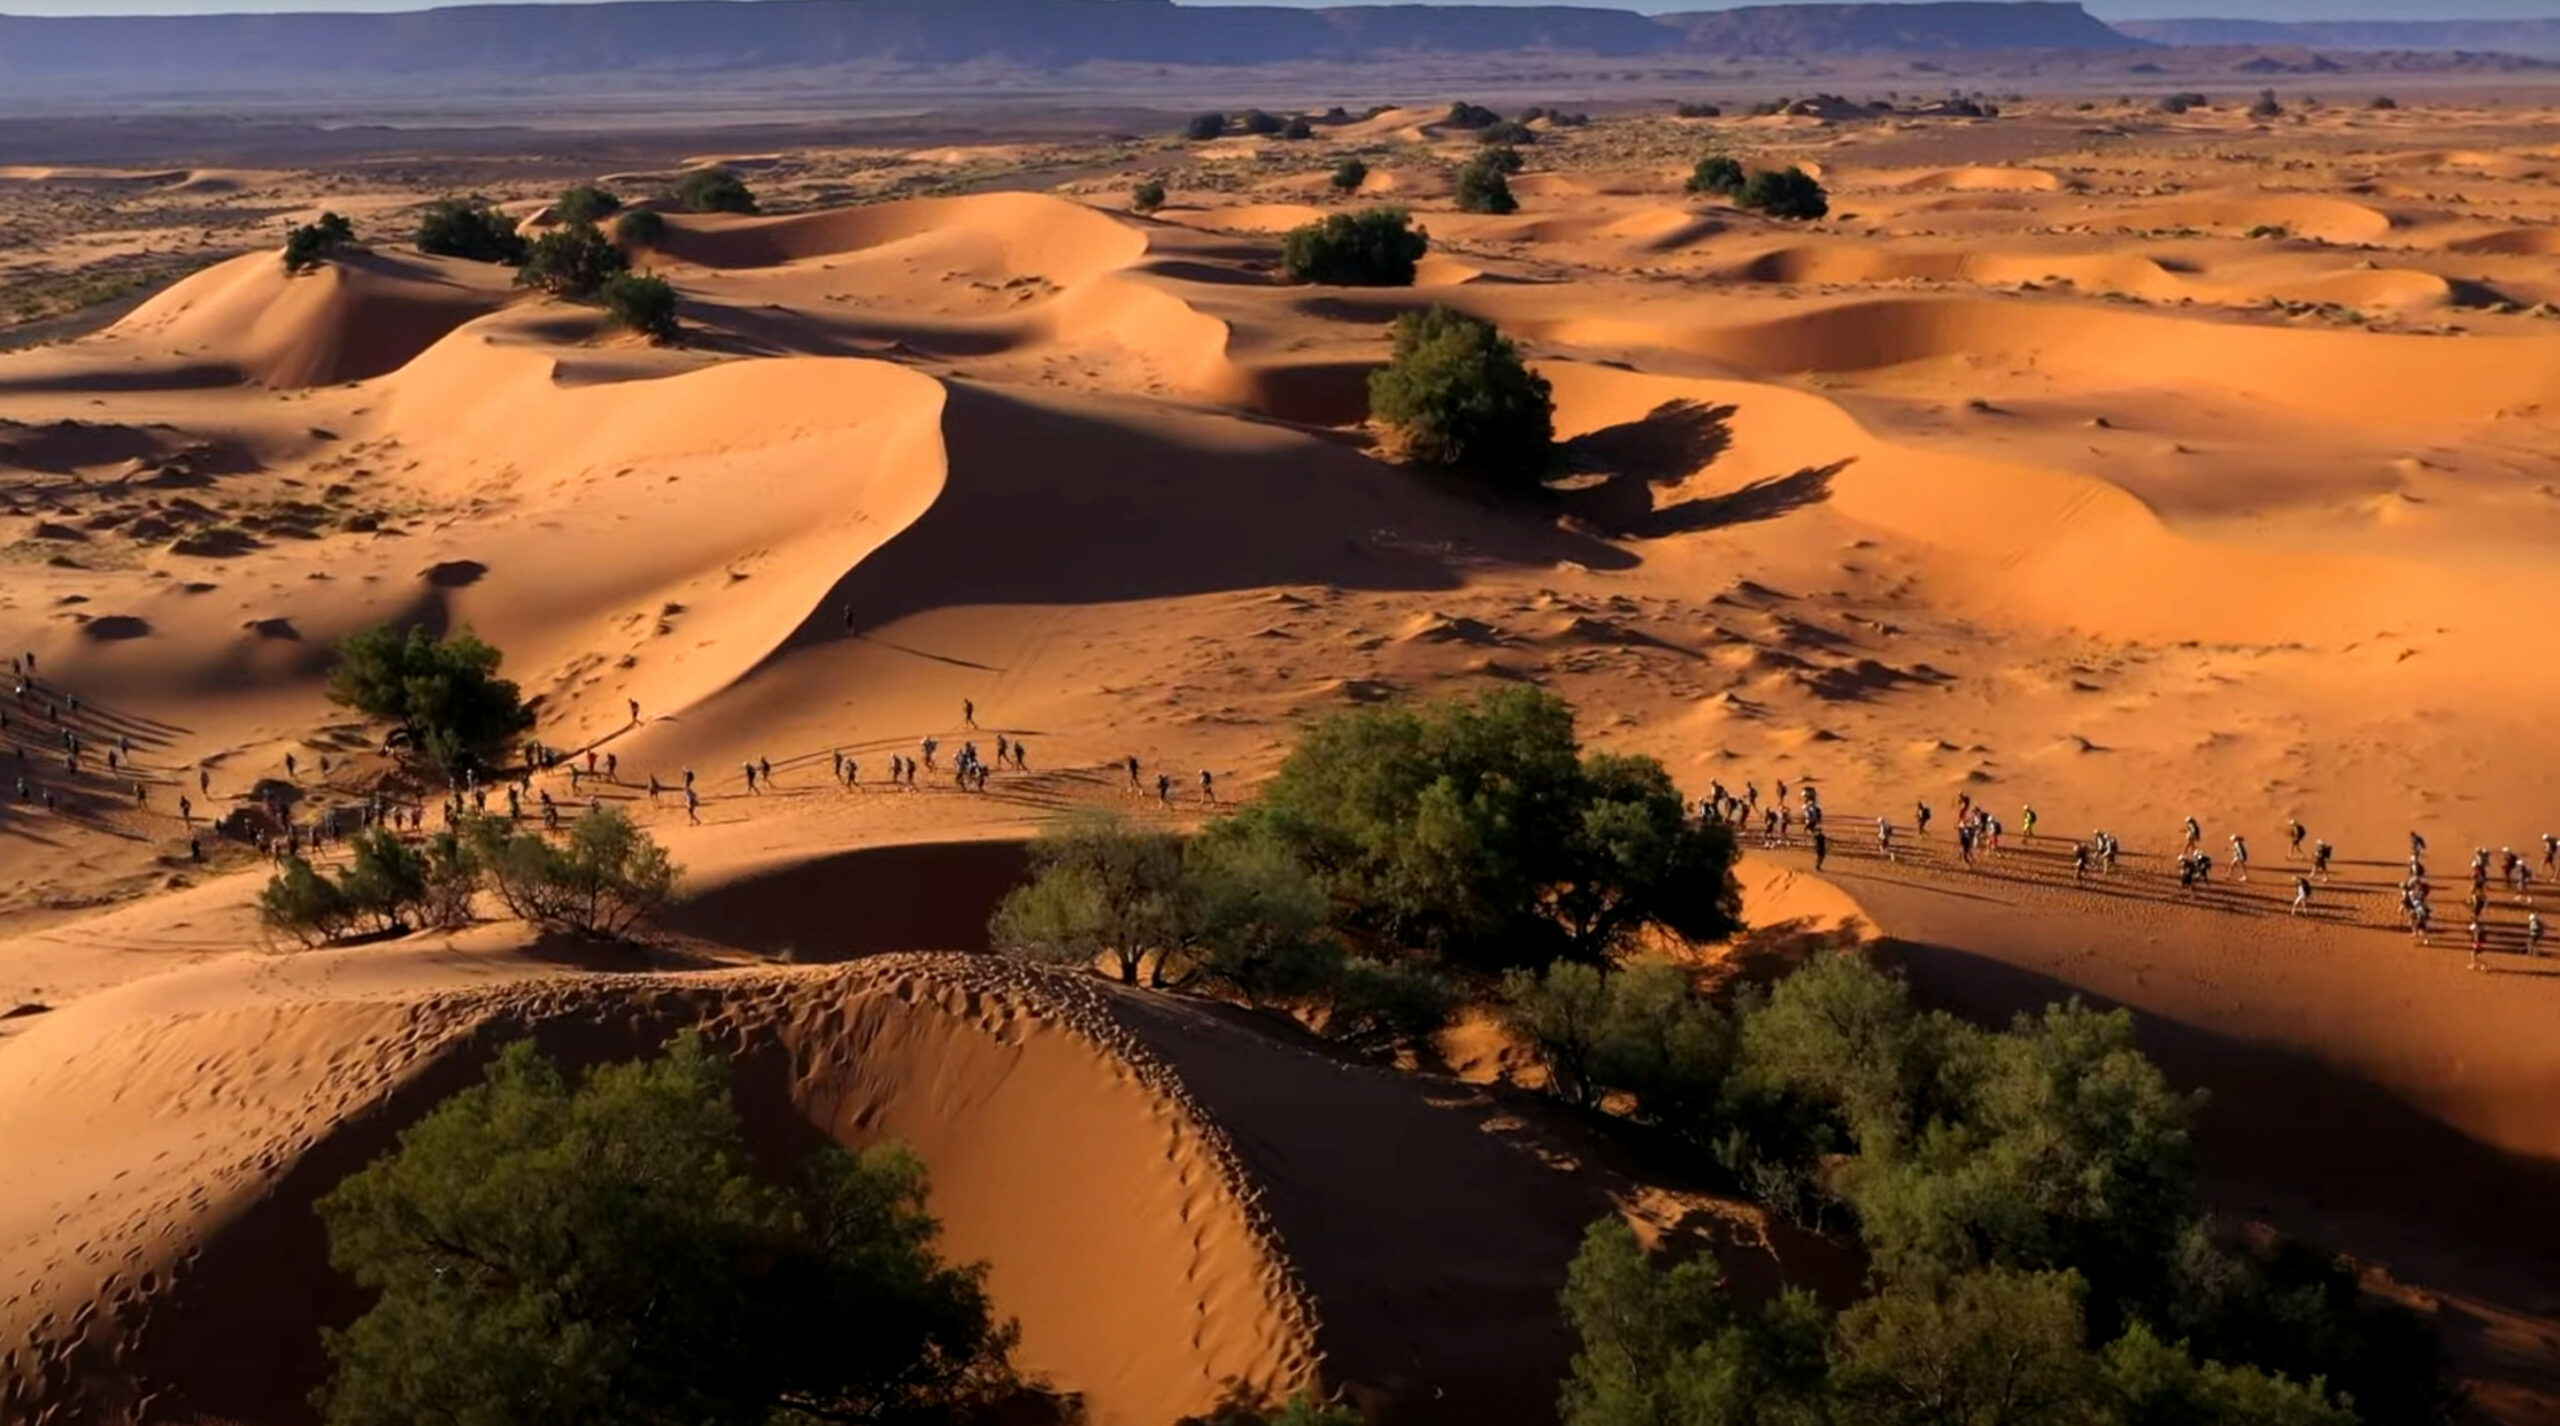 Participantes correndo pelas dunas de areia no deserto do Saara